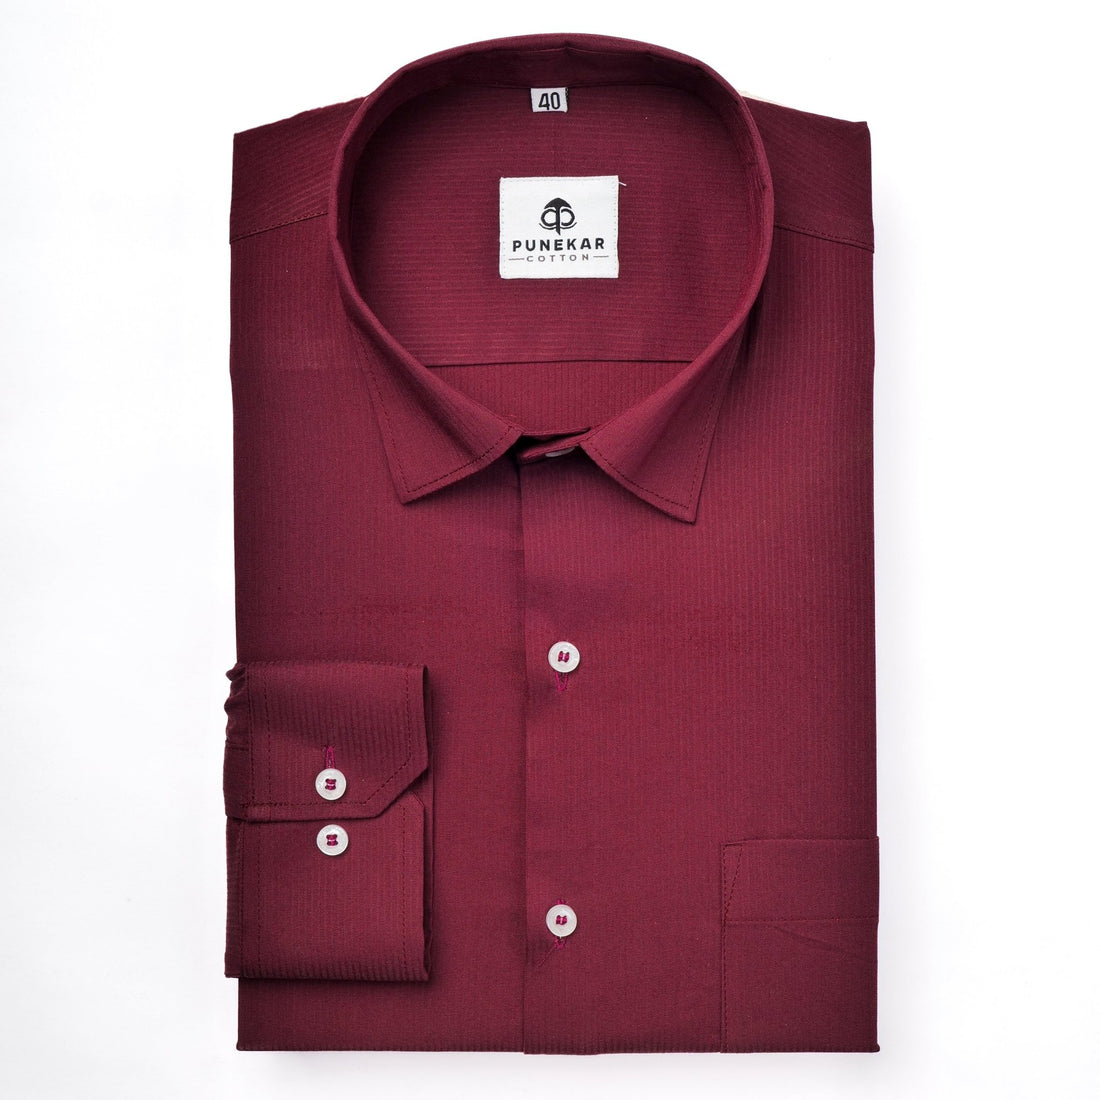 Maroon Color Lining Texture Lycra Cotton Shirt For Men - Punekar Cotton